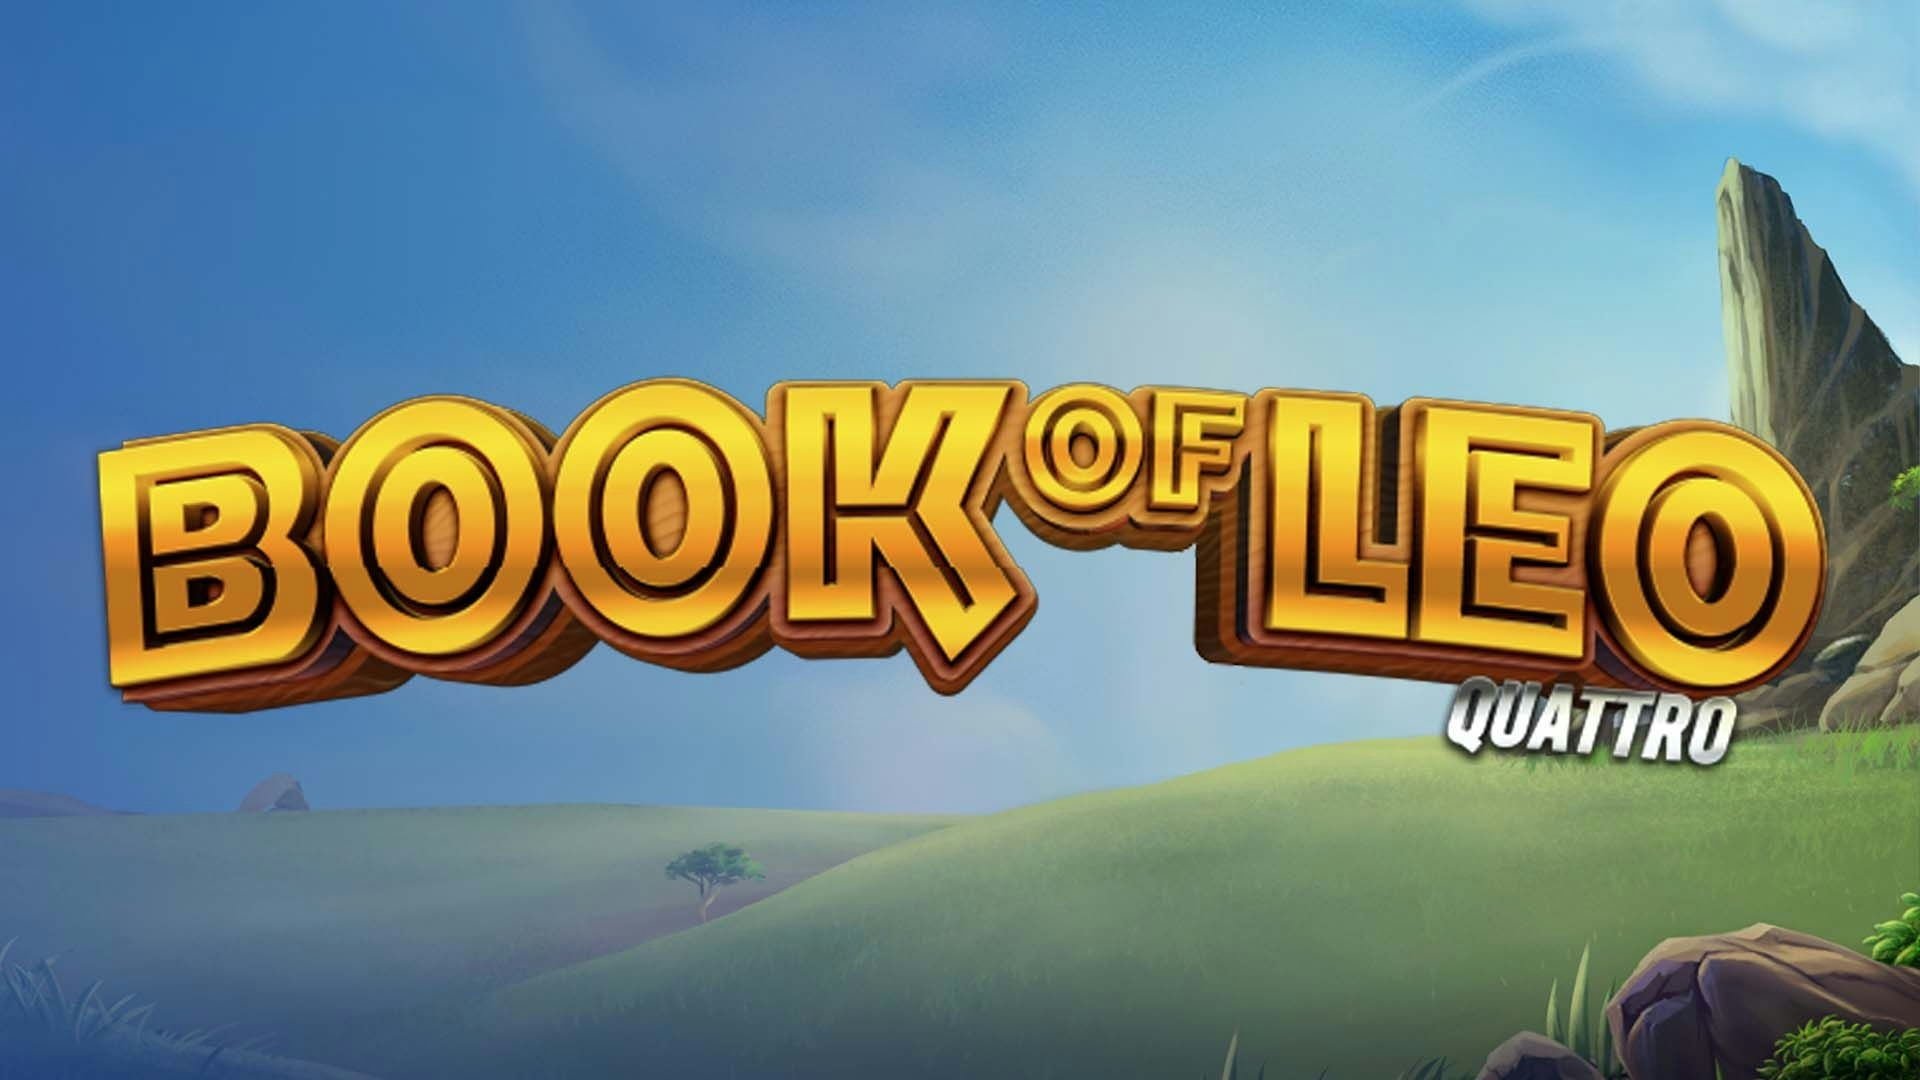 Book of Leo Quattro